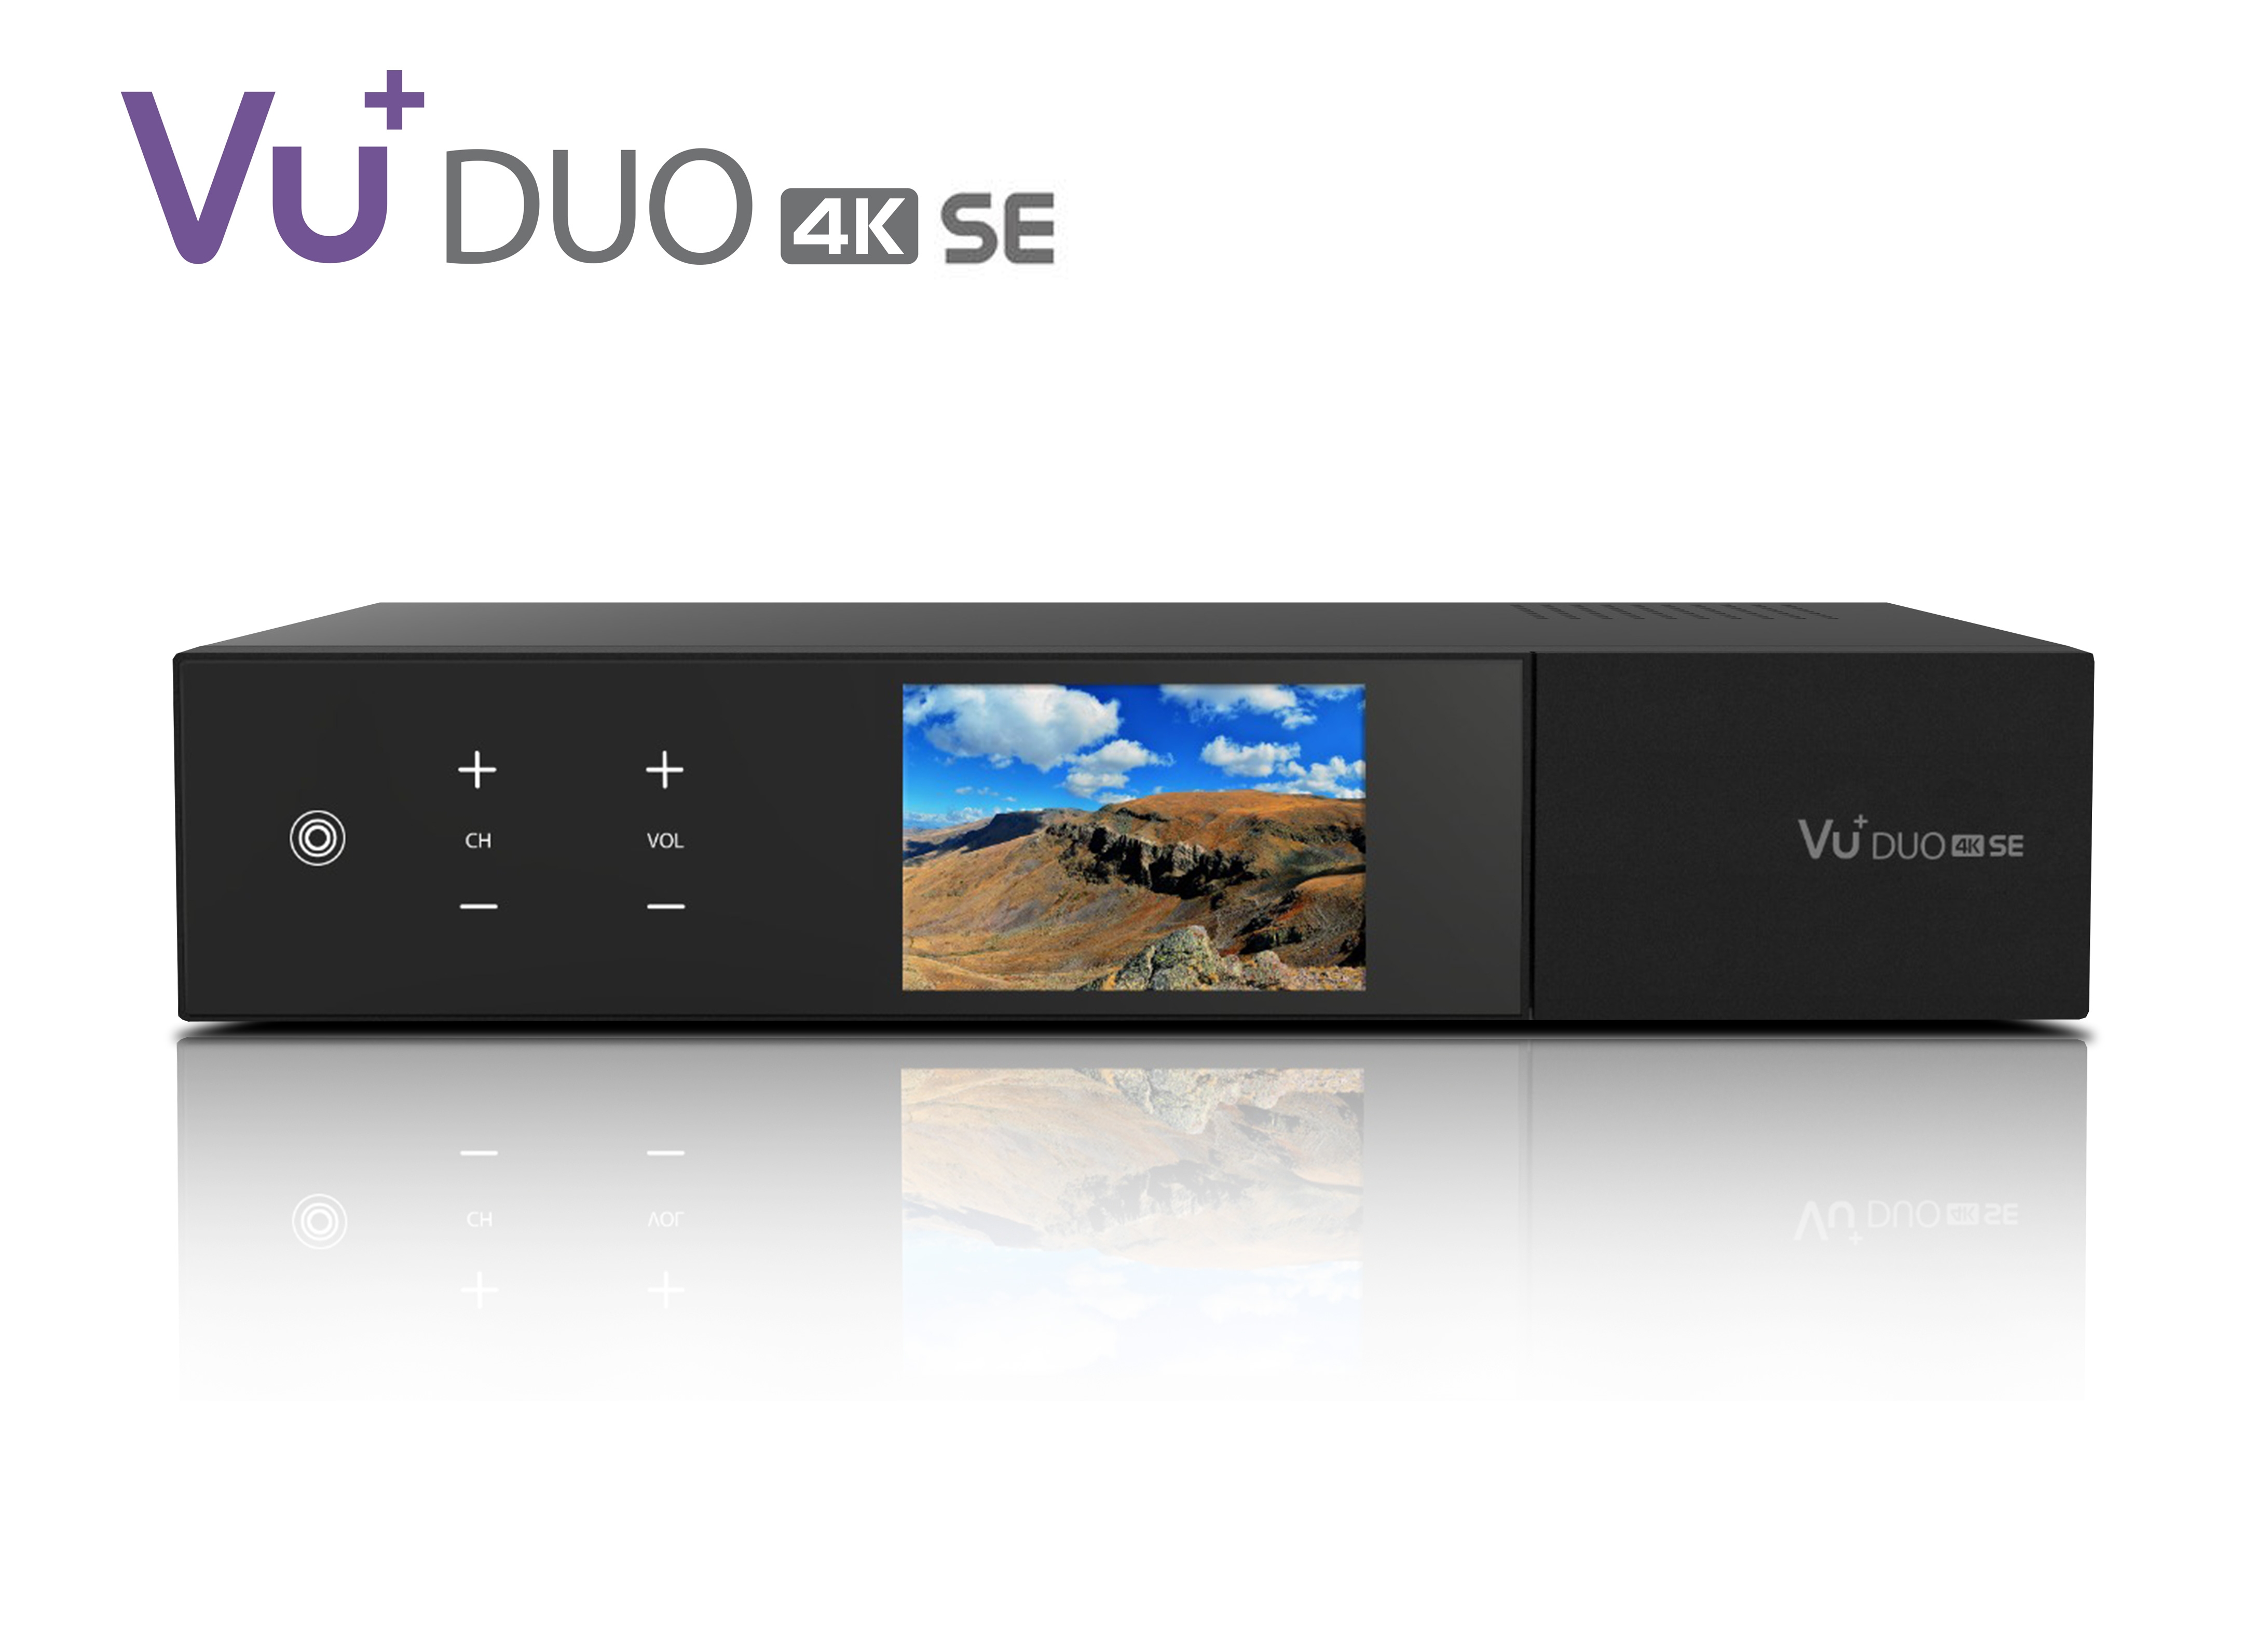 VU+ Duo 4K SE 1x DVB-S2X FBC Twin Tuner PVR ready Linux Receiver UHD 2160p VU+ Duo 4K SE 1x DVB-S2X FBC Twin / 1x DVB-T2 Dual Tuner 500 GB HDD Linux Receiver UHD 2160p